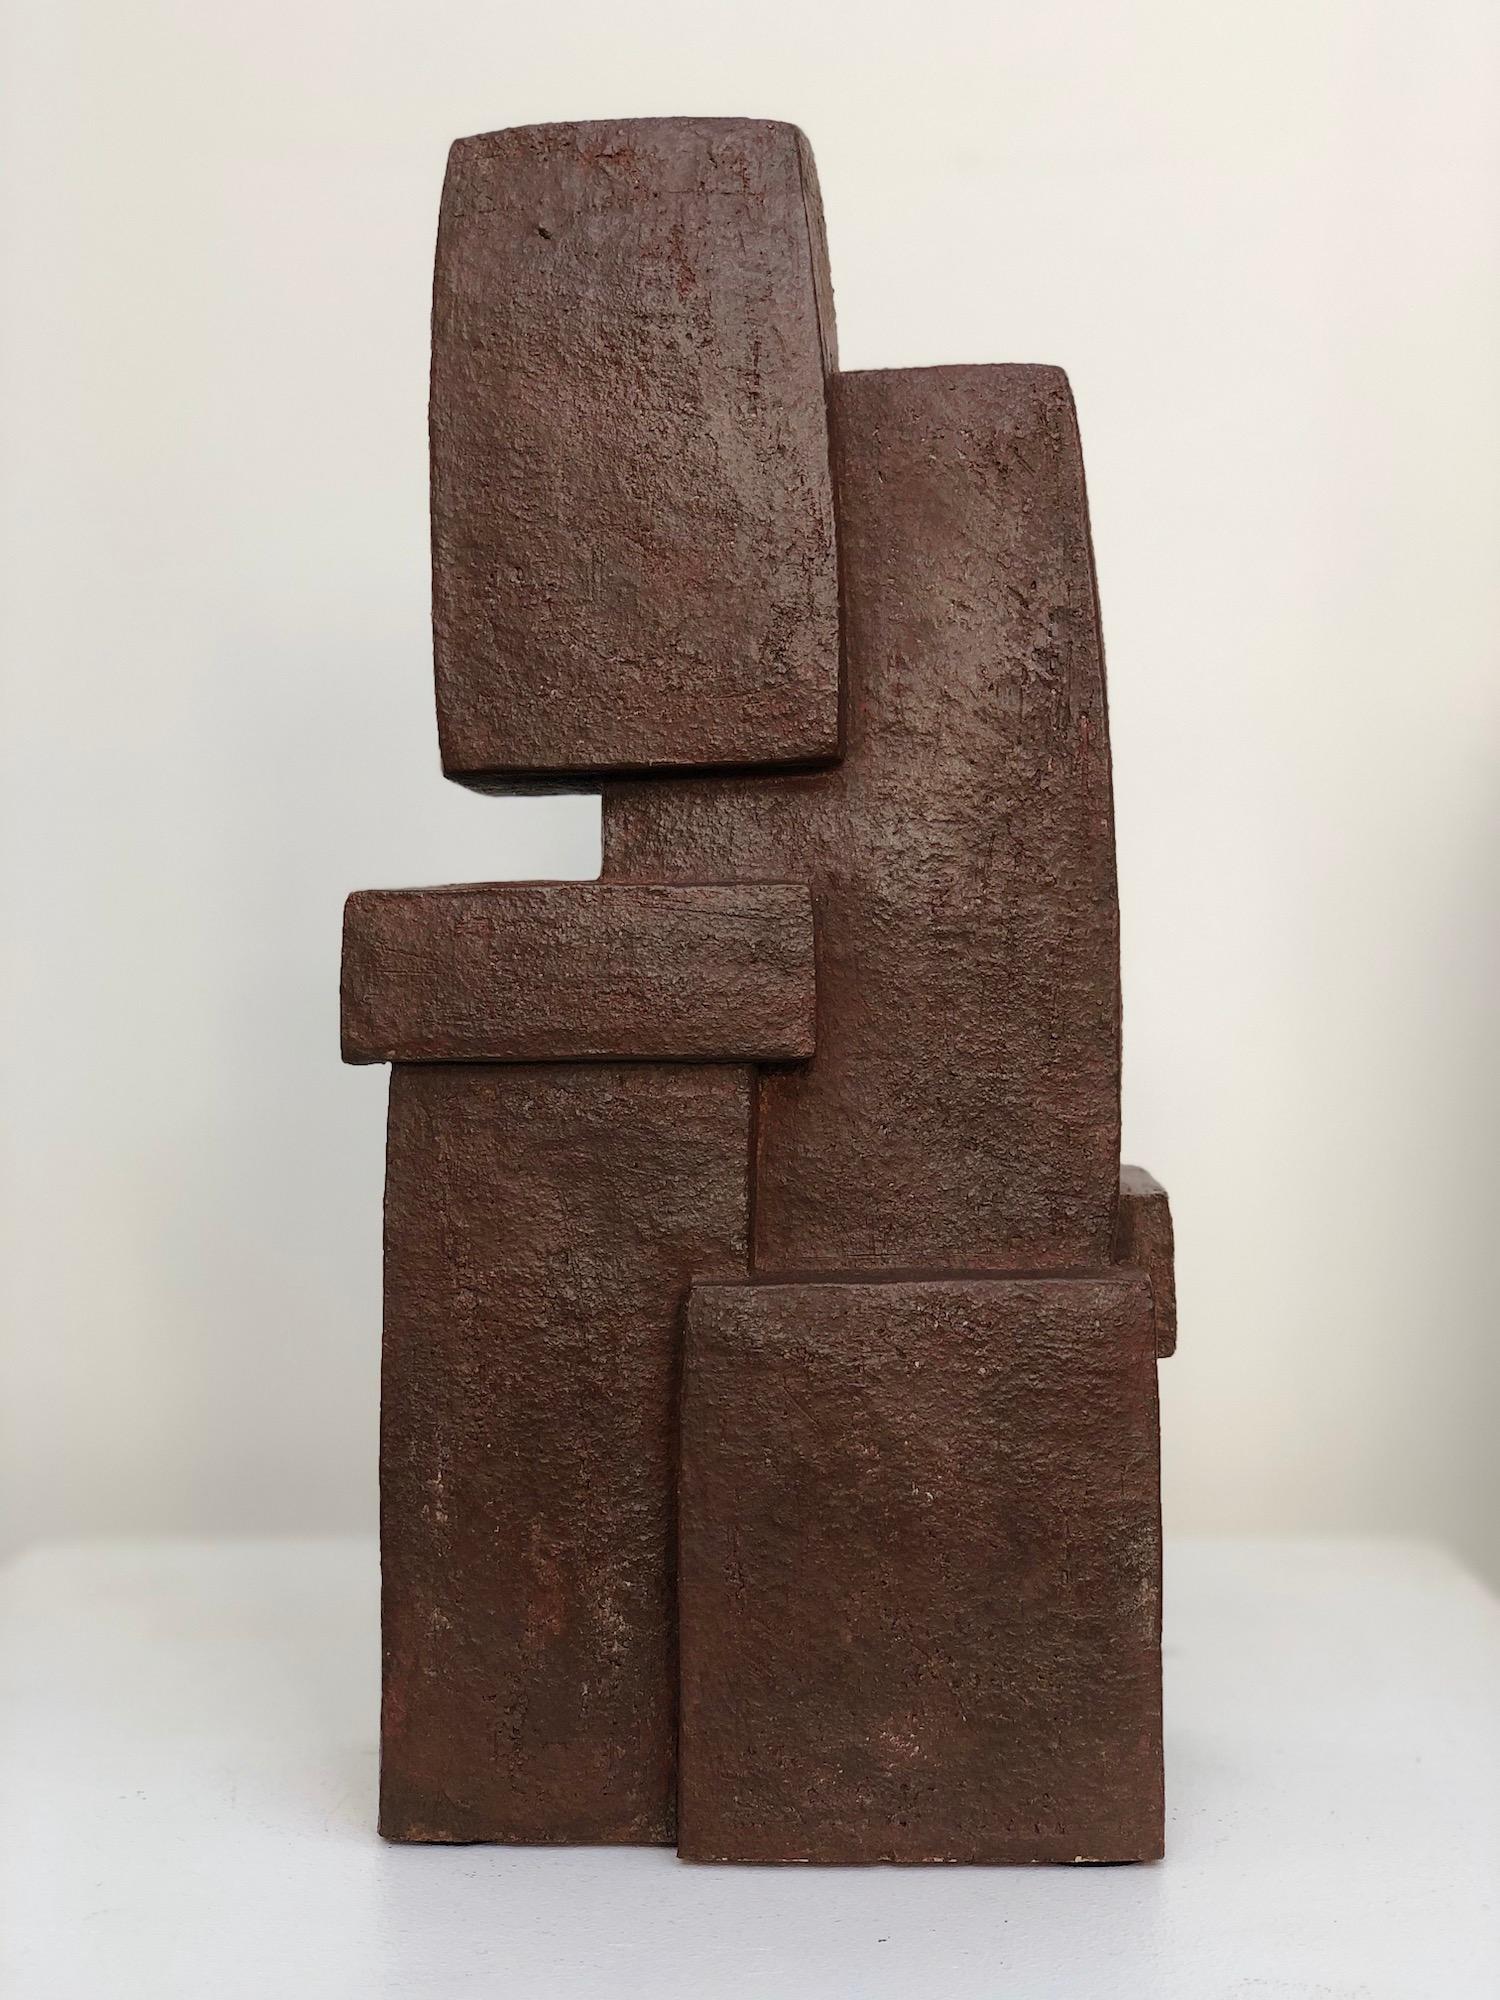 abstract terracotta sculpture